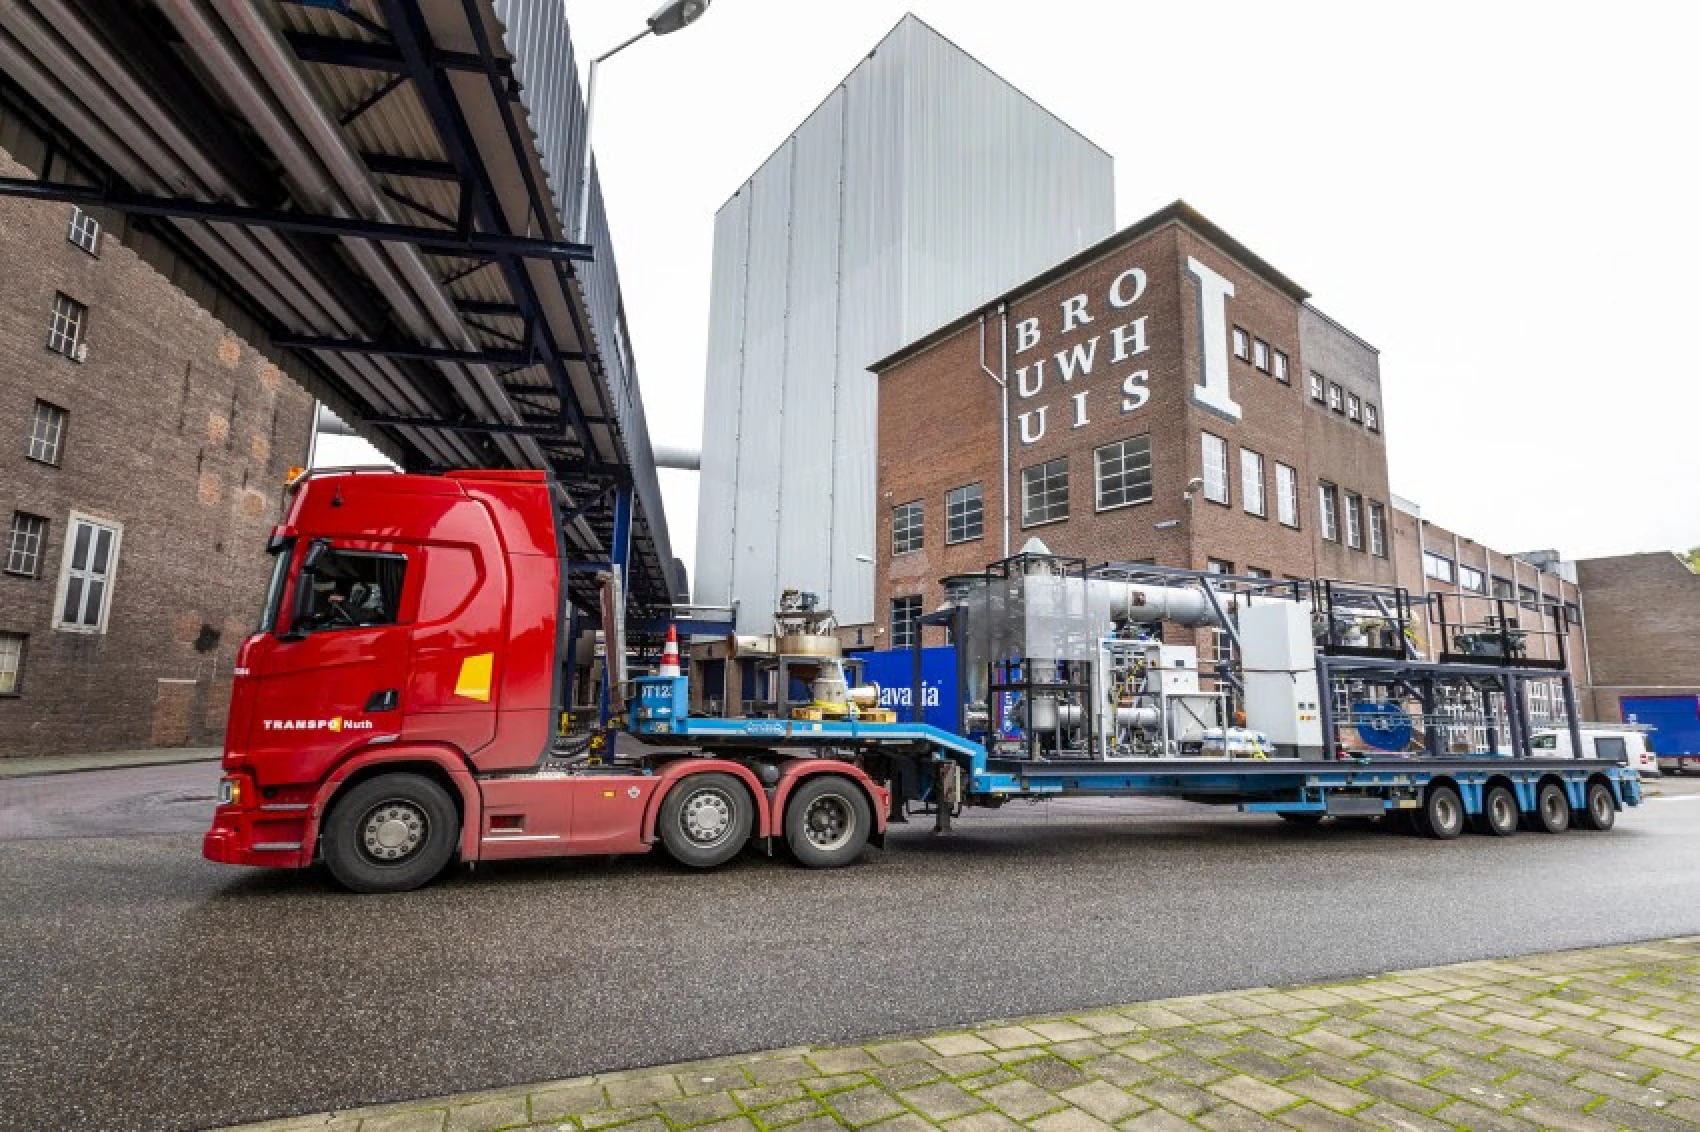 Систему для отримання енергії з окислення заліза доставляють у броварню: фото Mees van den Ekart/TU Eindhoven